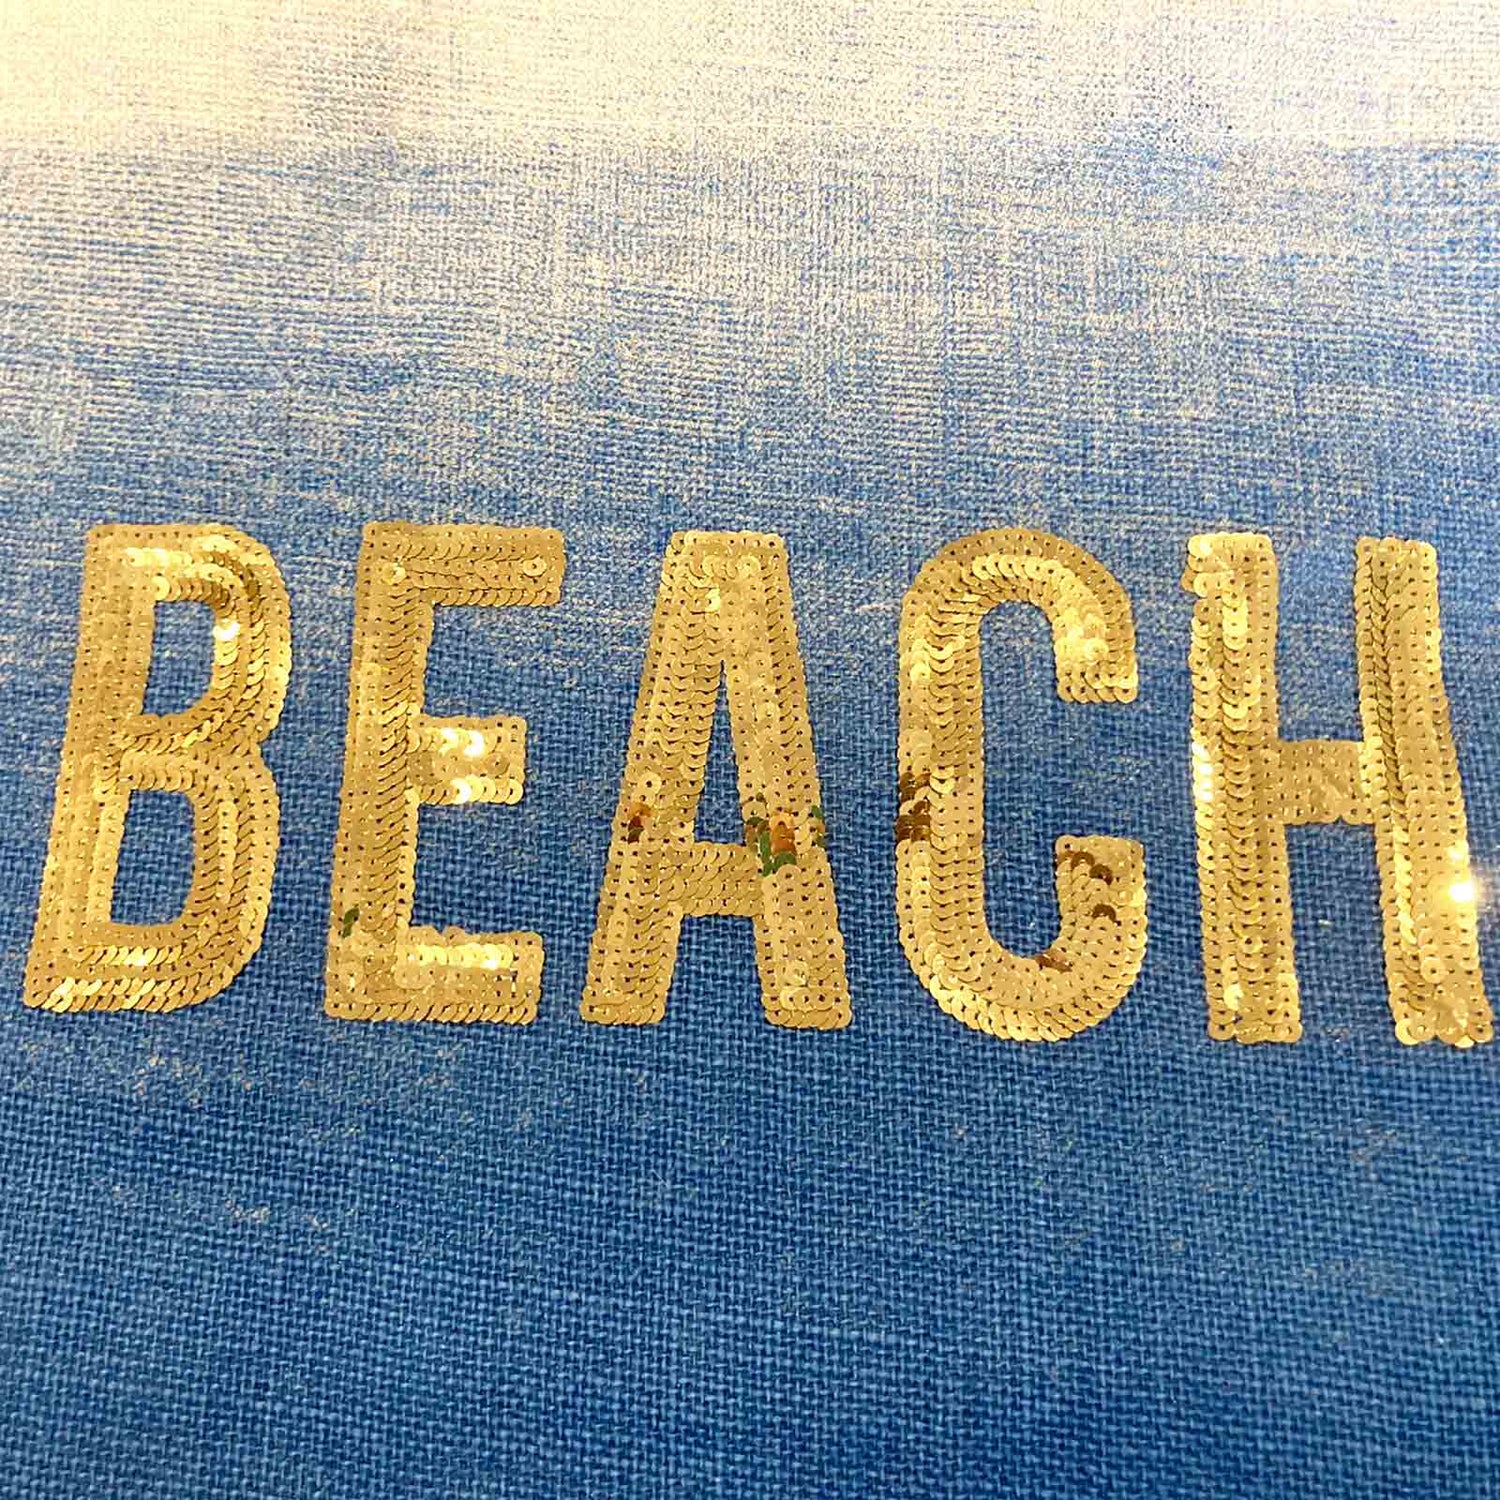 Blue BEACH Sequin Jute Beach Bag Tote